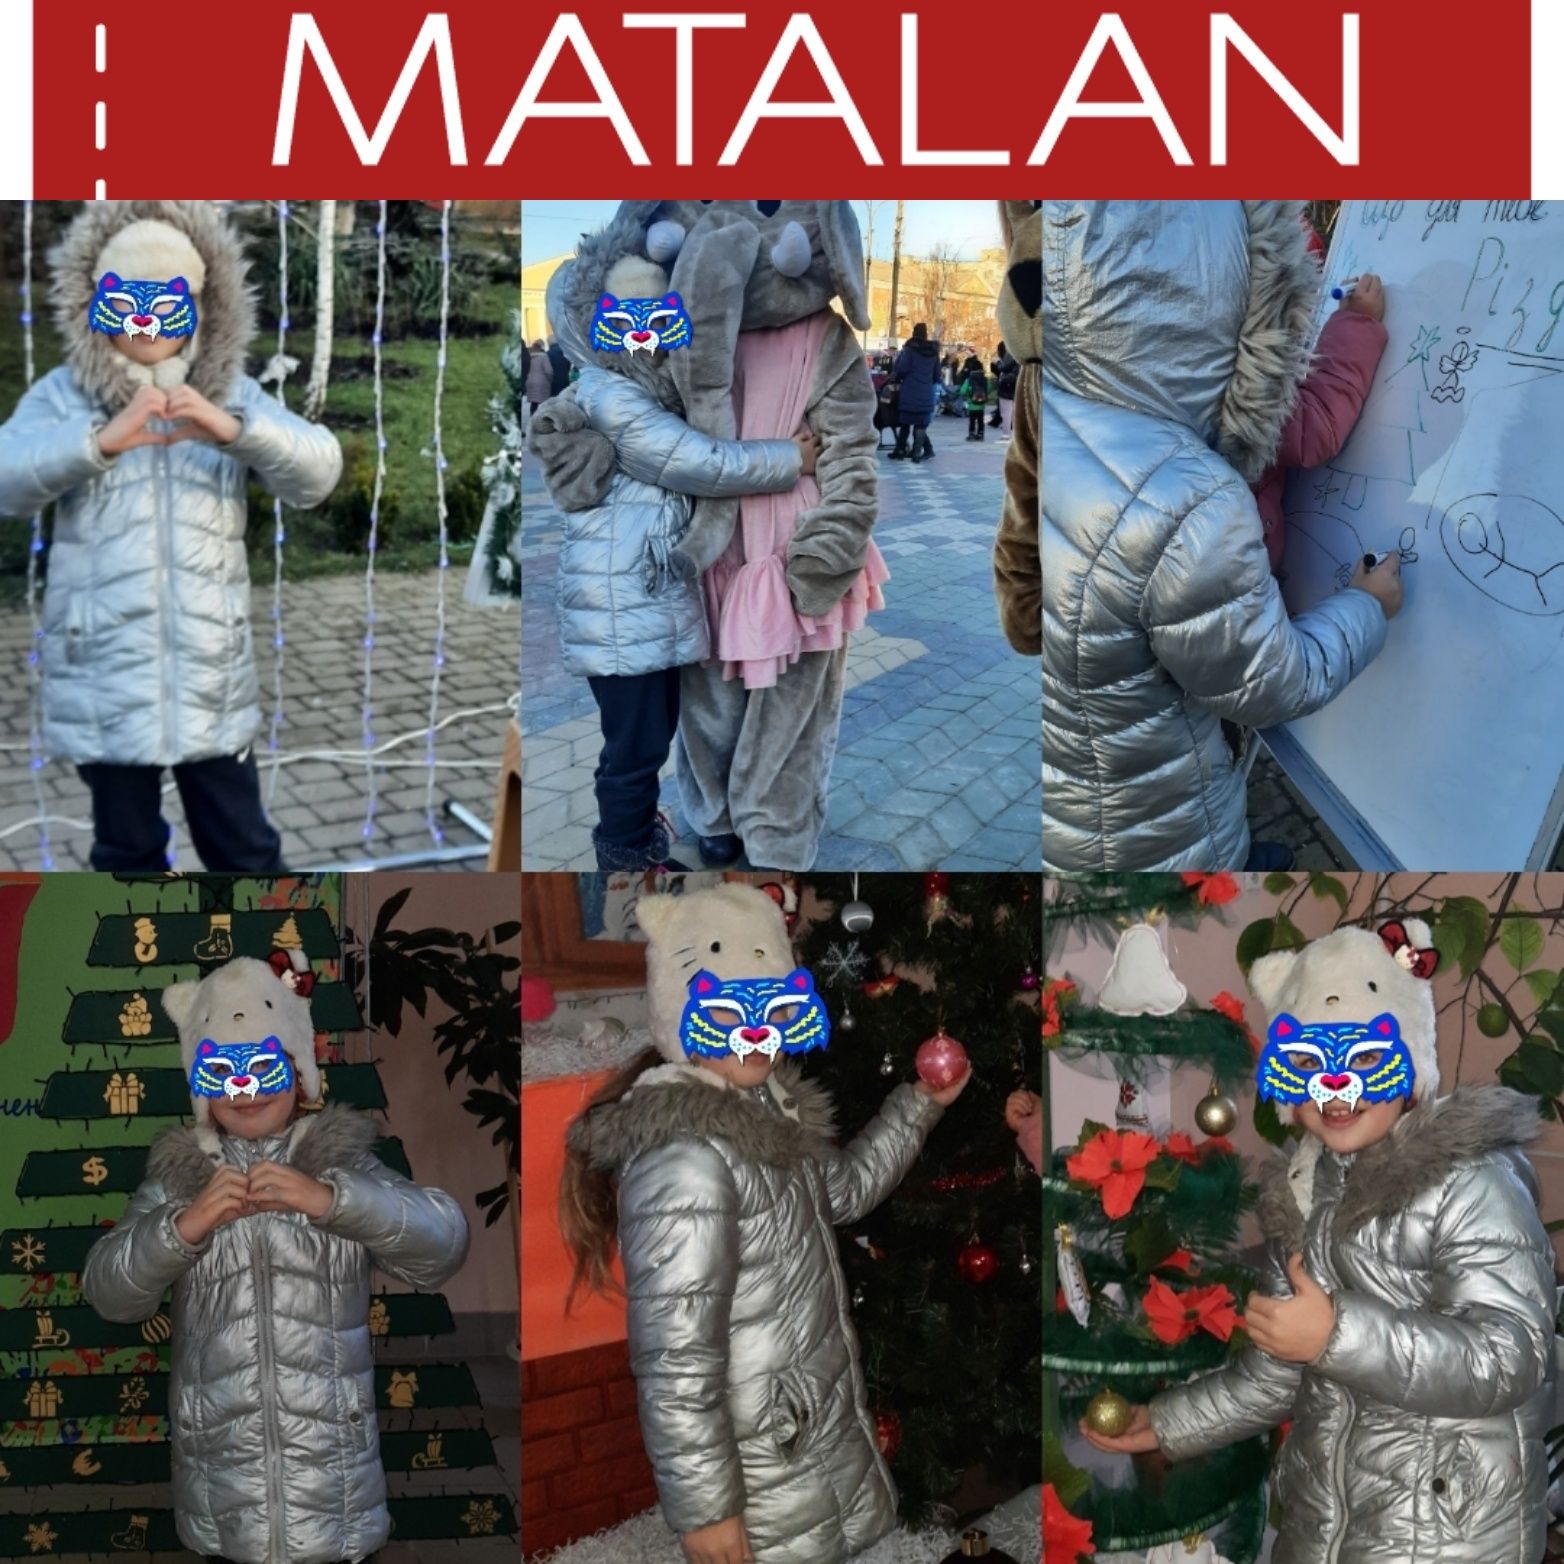 Зимова куртка Matalan p 122-128(7-8р.)